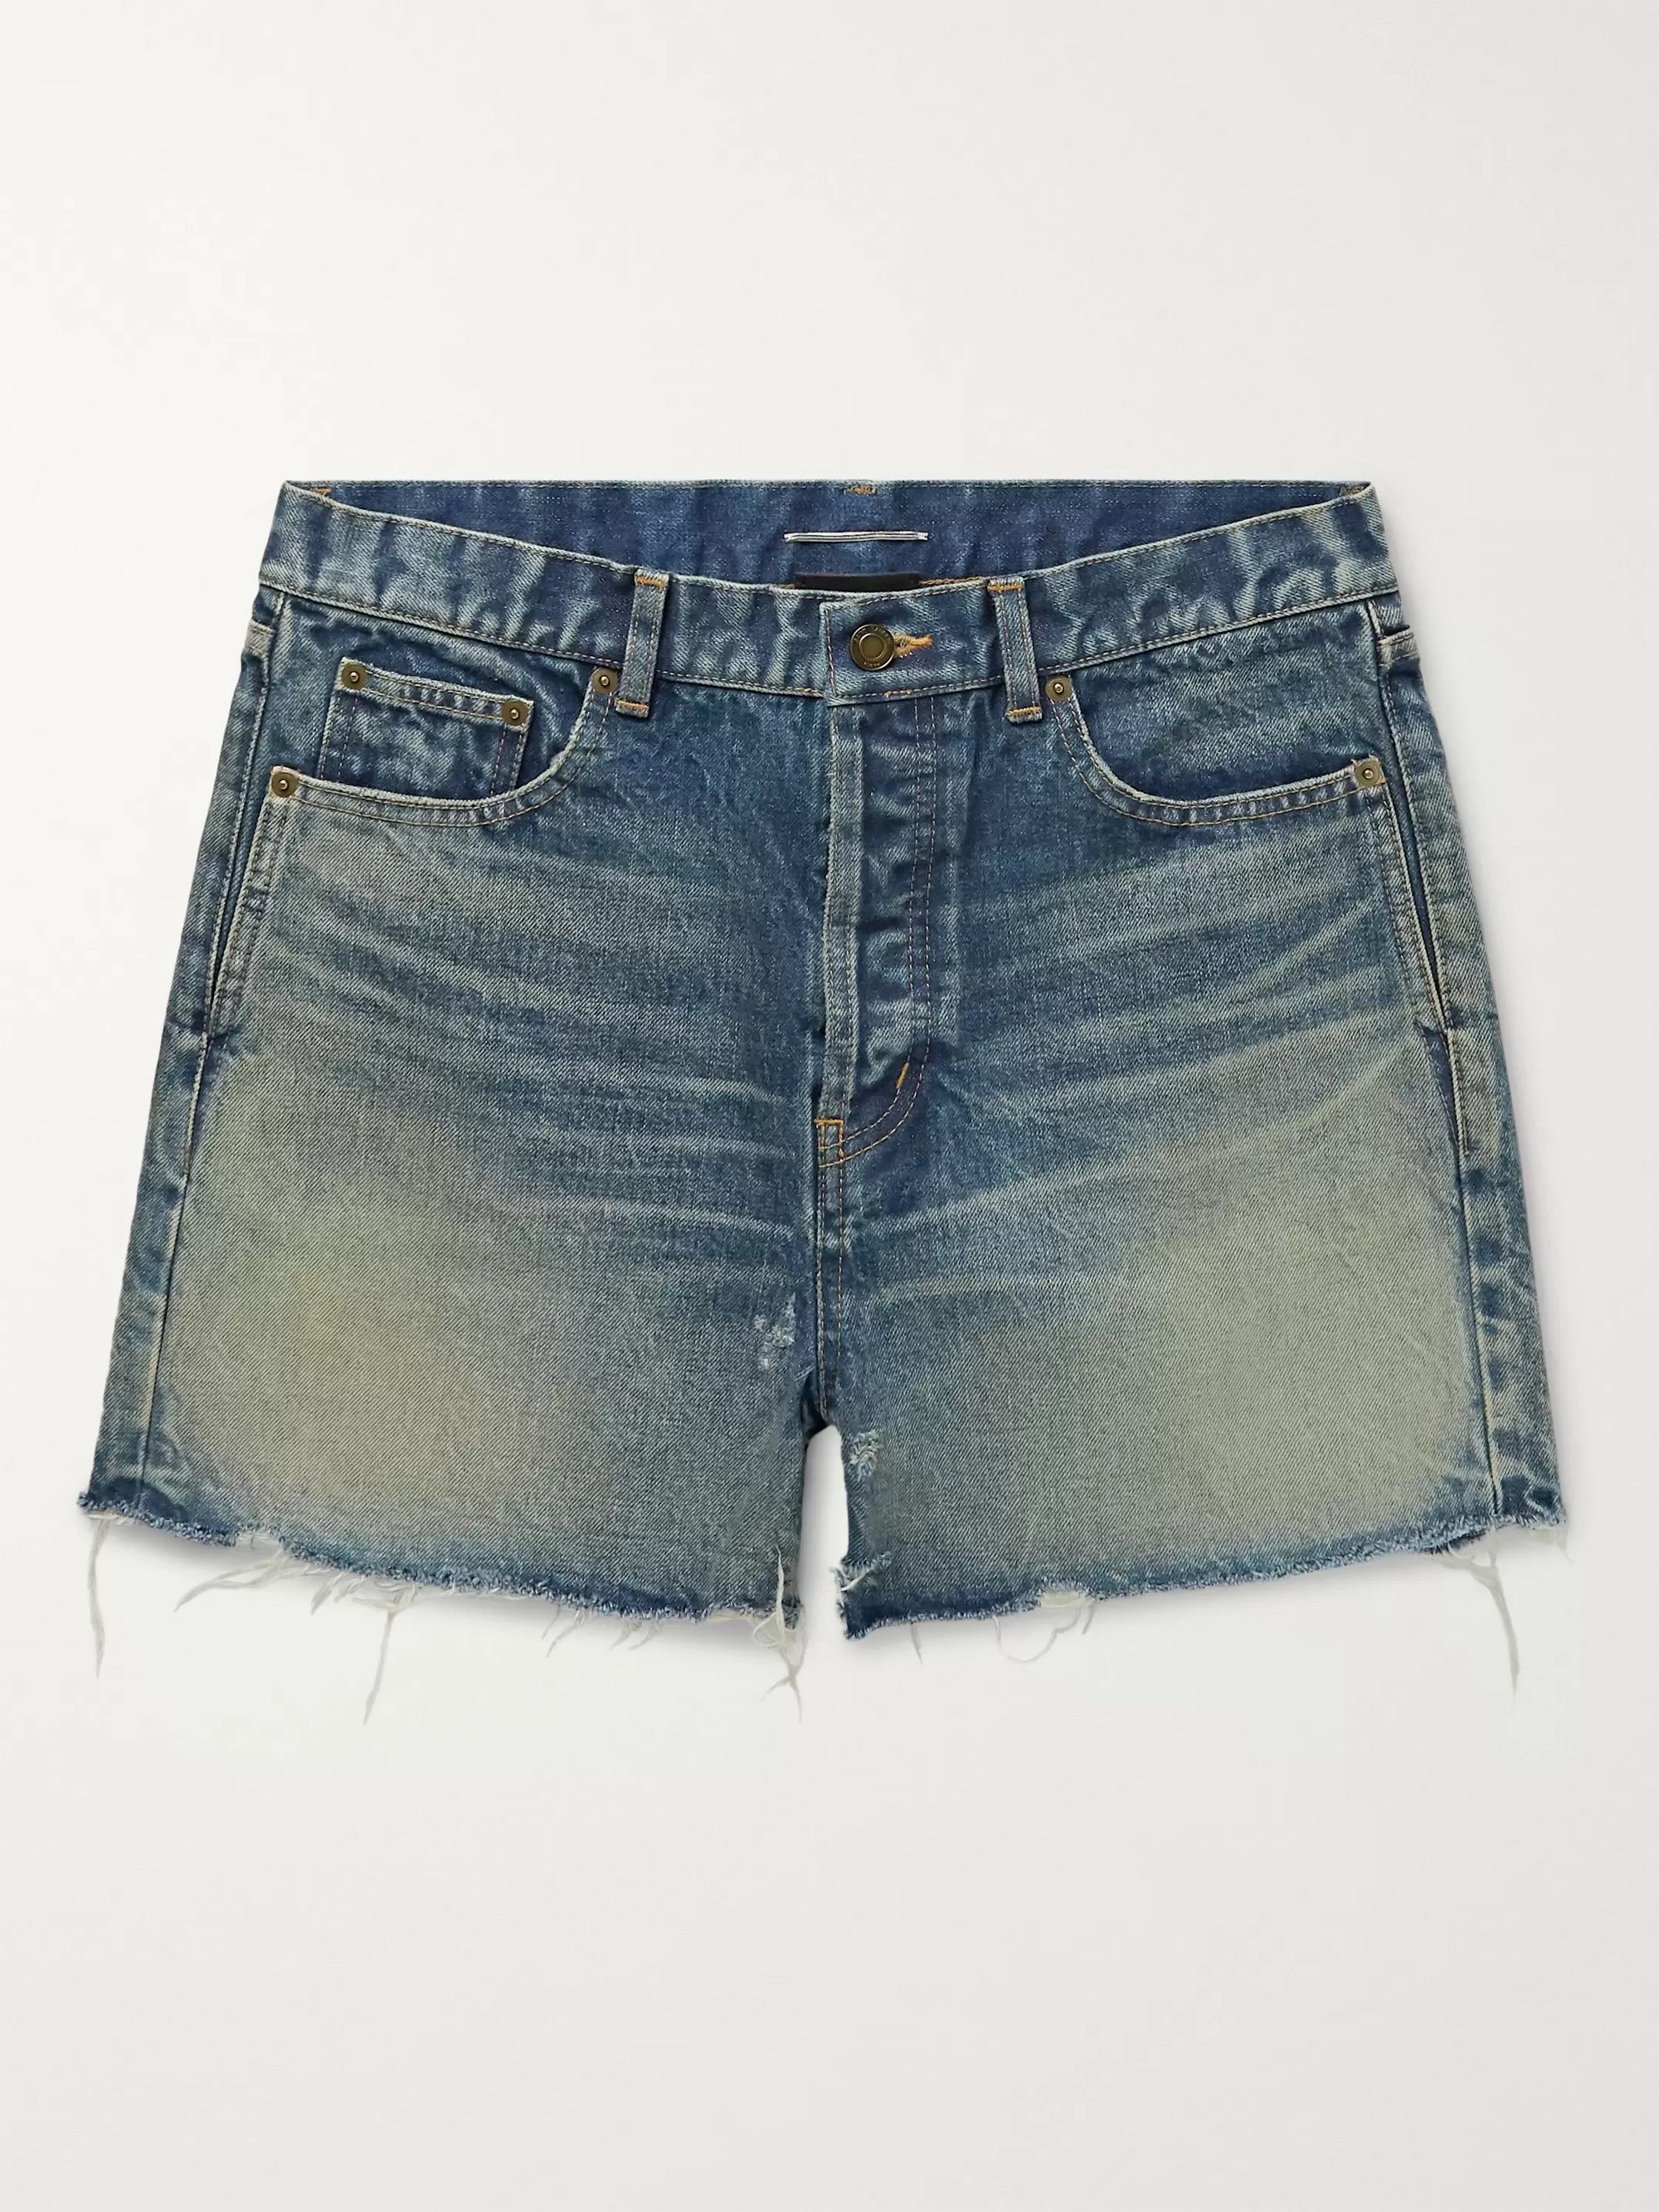 Saint Laurent Denim Shorts Hot Sale, UP TO 51% OFF | www.rupit.com